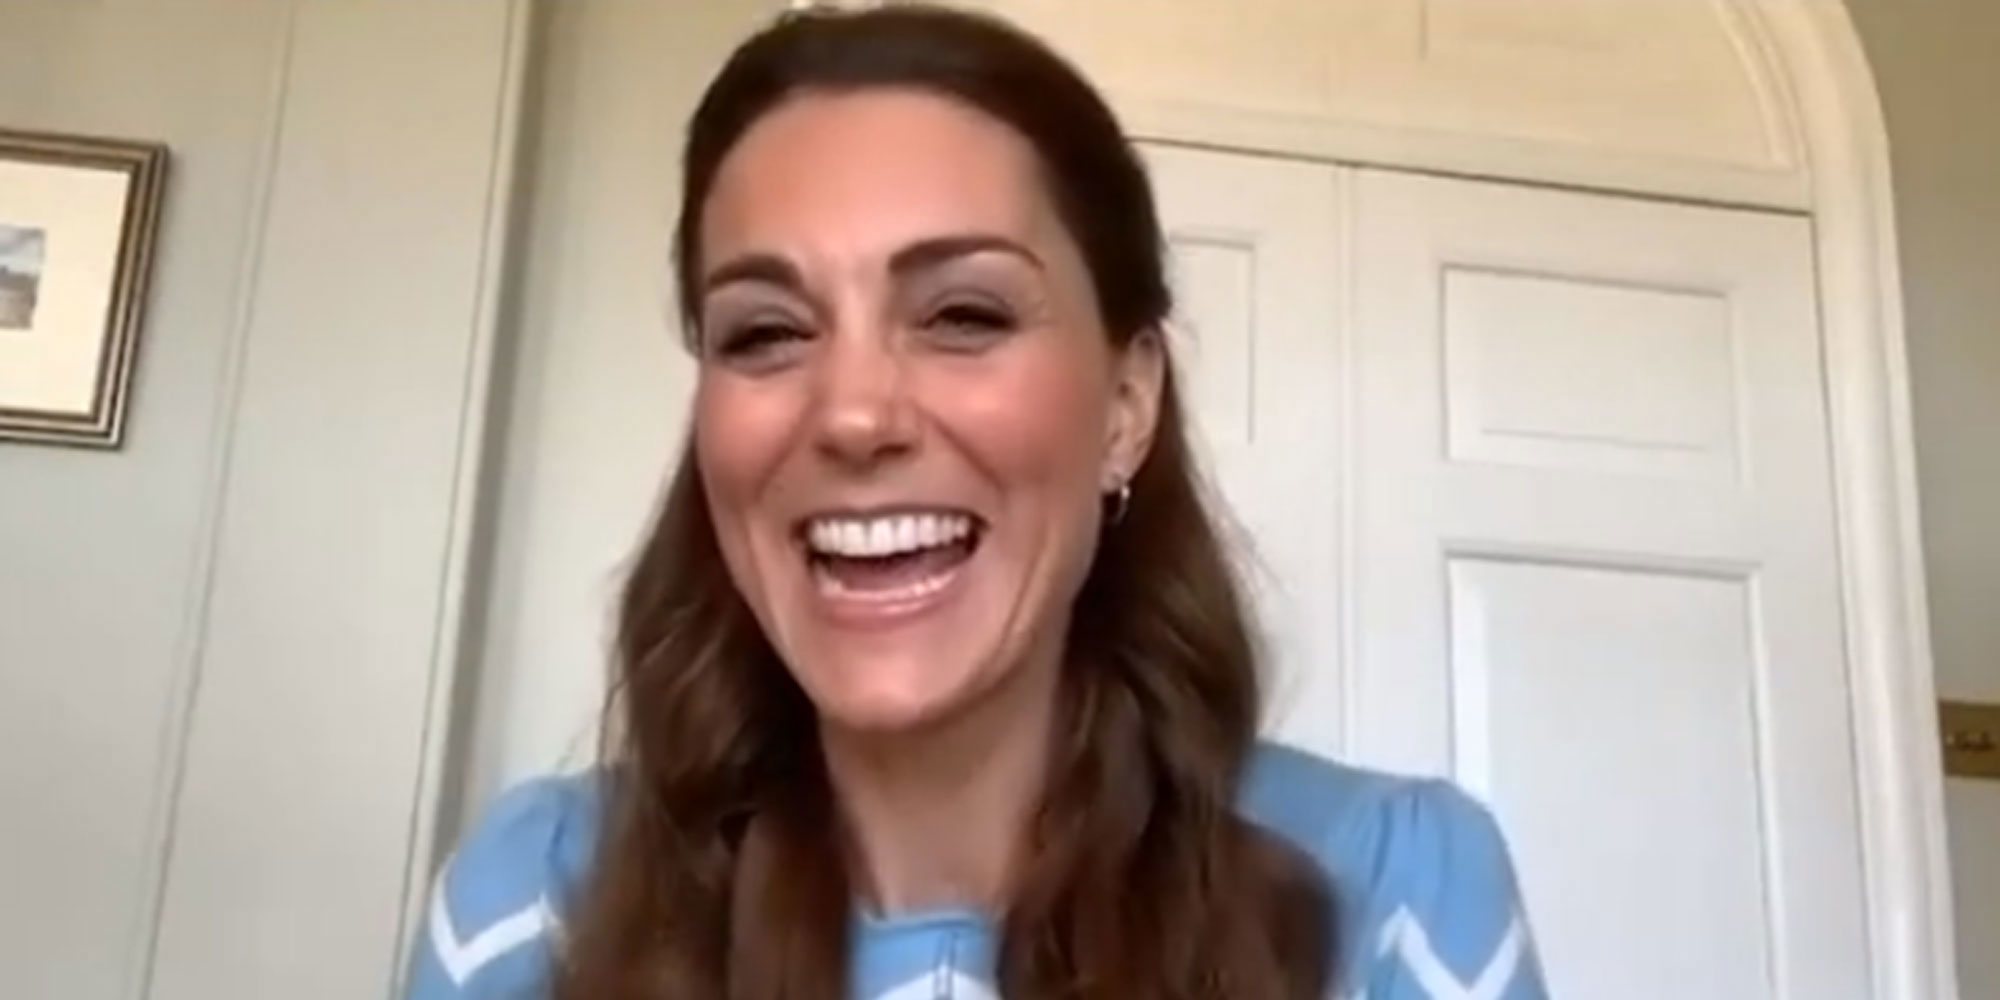 La sorpresa de Kate Middleton a unos padres primerizos en el hospital a través de una videollamada